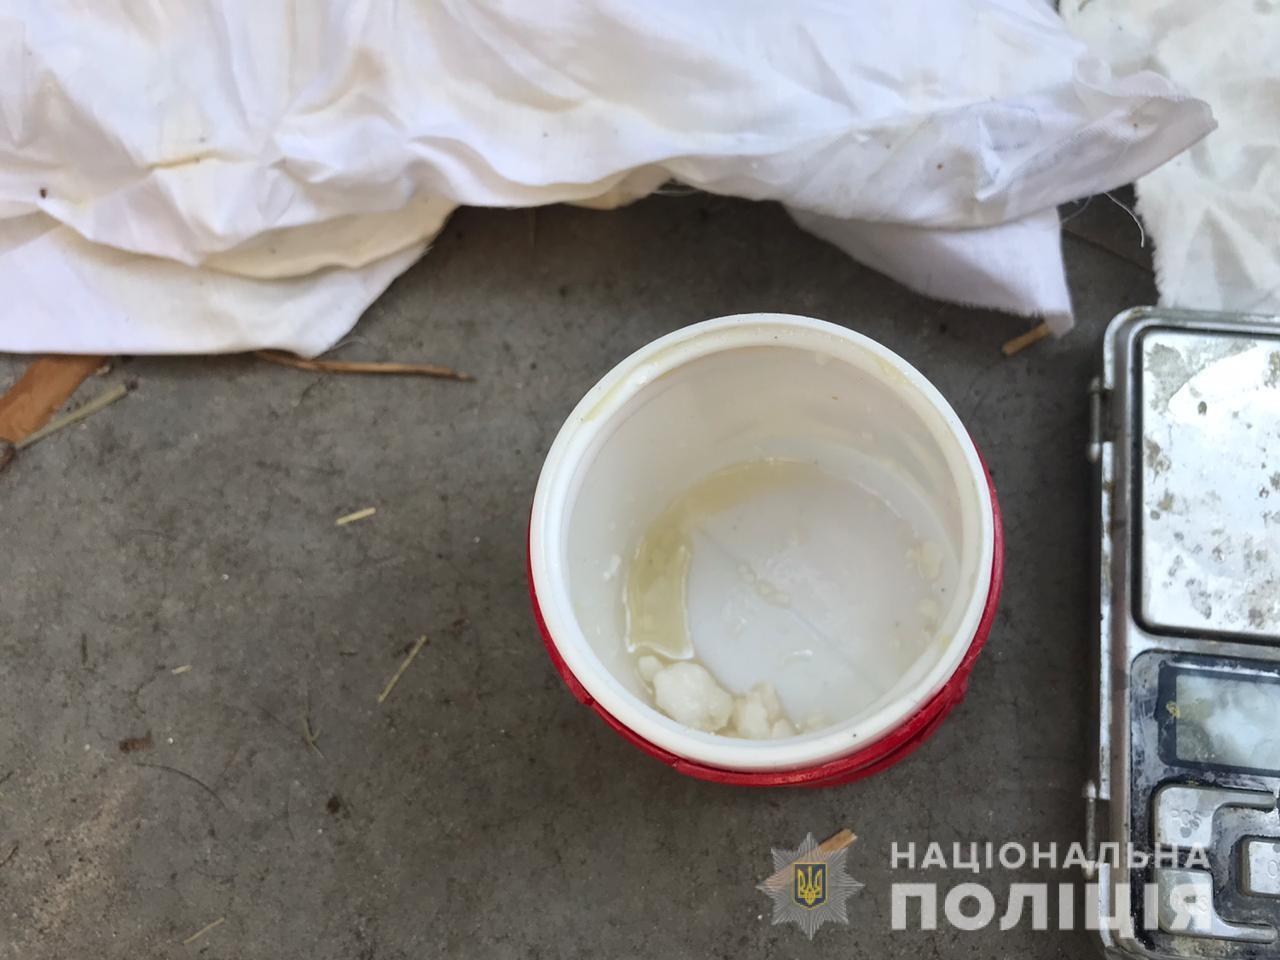 На Київщині поліція виявила чергову лабораторію з виготовлення психотропної речовини 